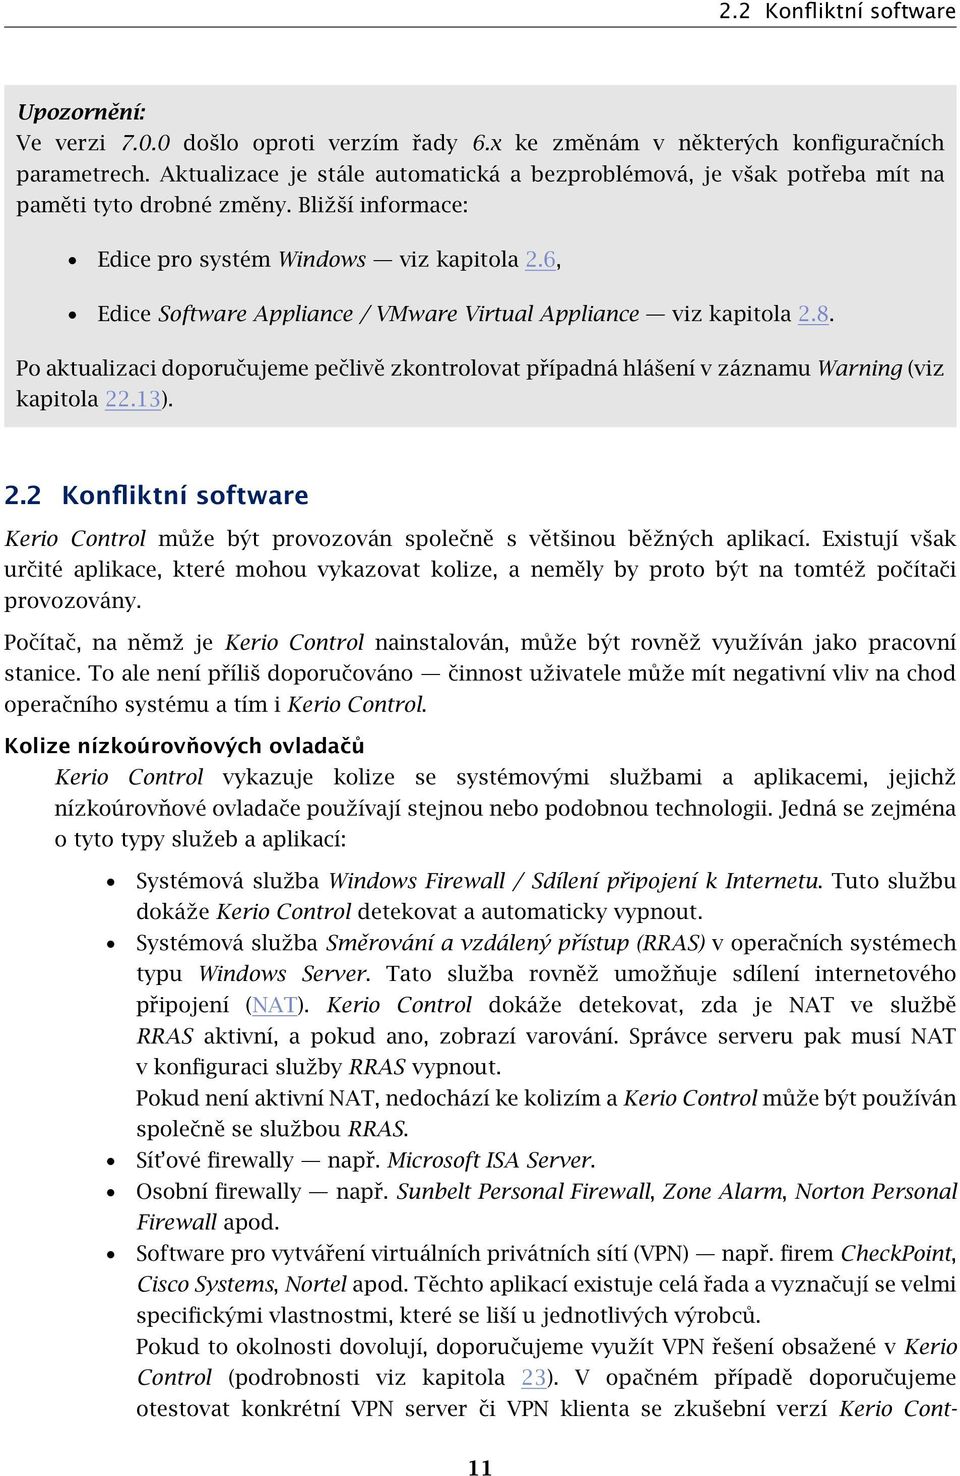 6, Edice Software Appliance / VMware Virtual Appliance viz kapitola 2.8. Po aktualizaci doporučujeme pečlivě zkontrolovat případná hlášení v záznamu Warning (viz kapitola 22.13). 2.2 Konfliktní software Kerio Control může být provozován společně s většinou běžných aplikací.